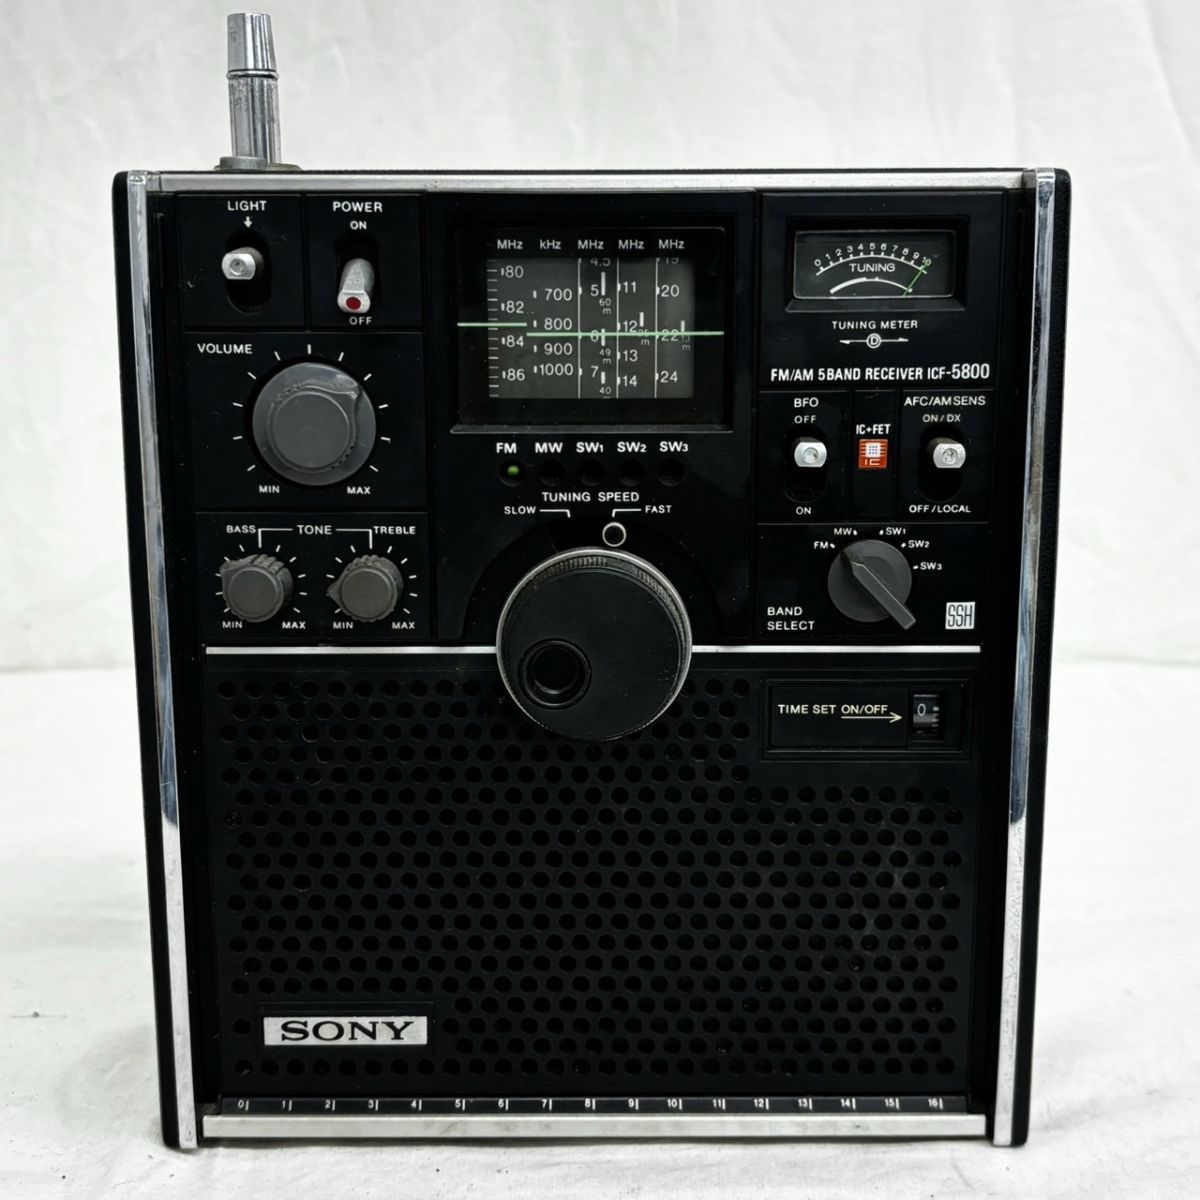 H327-H15-2195 SONY ソニー ICF-5800 スカイセンサー 5バンドマルチバンドレシーバー ラジオ オーディオ機器_画像1